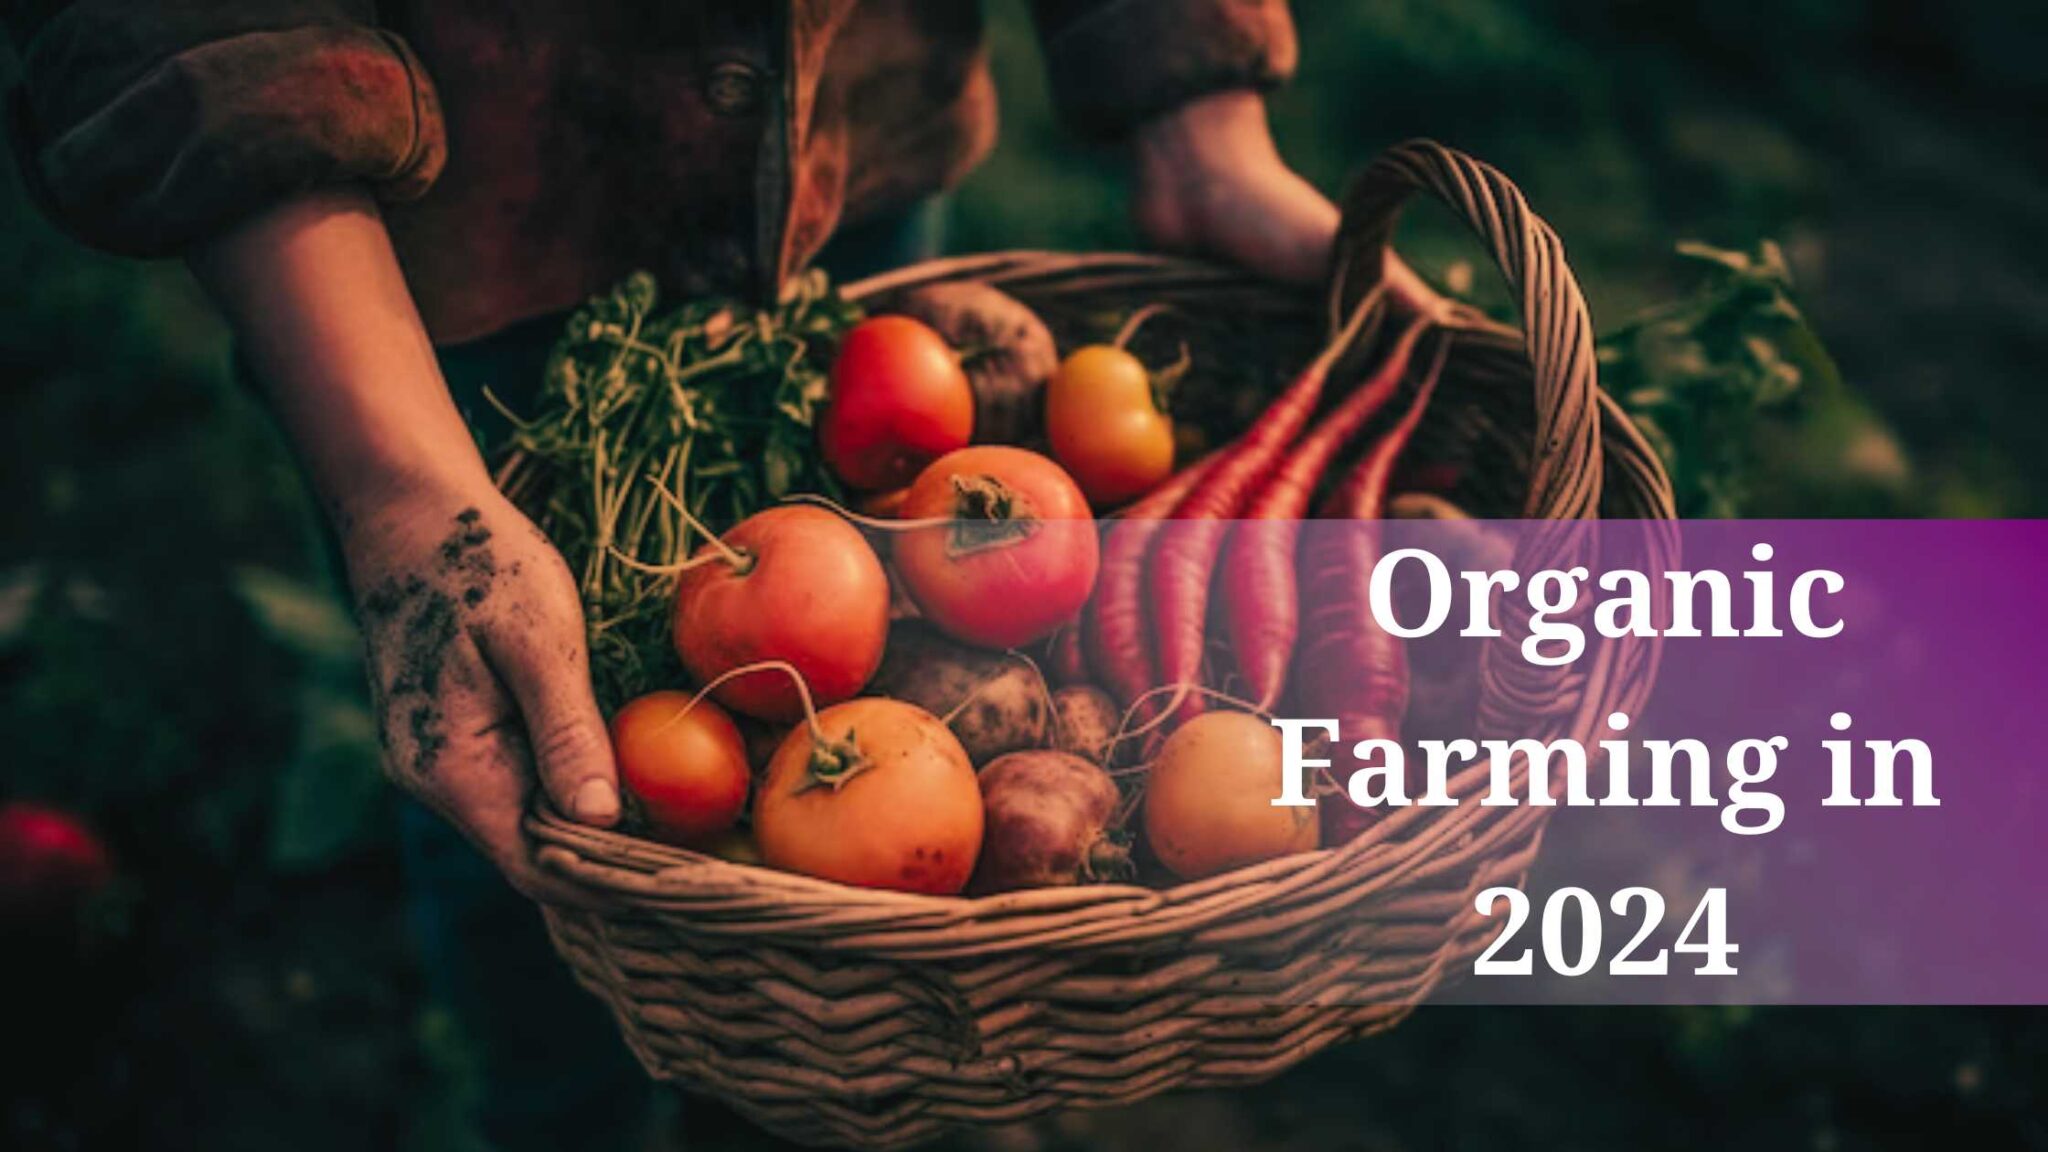 Organic Farming In 2024 2048x1152 